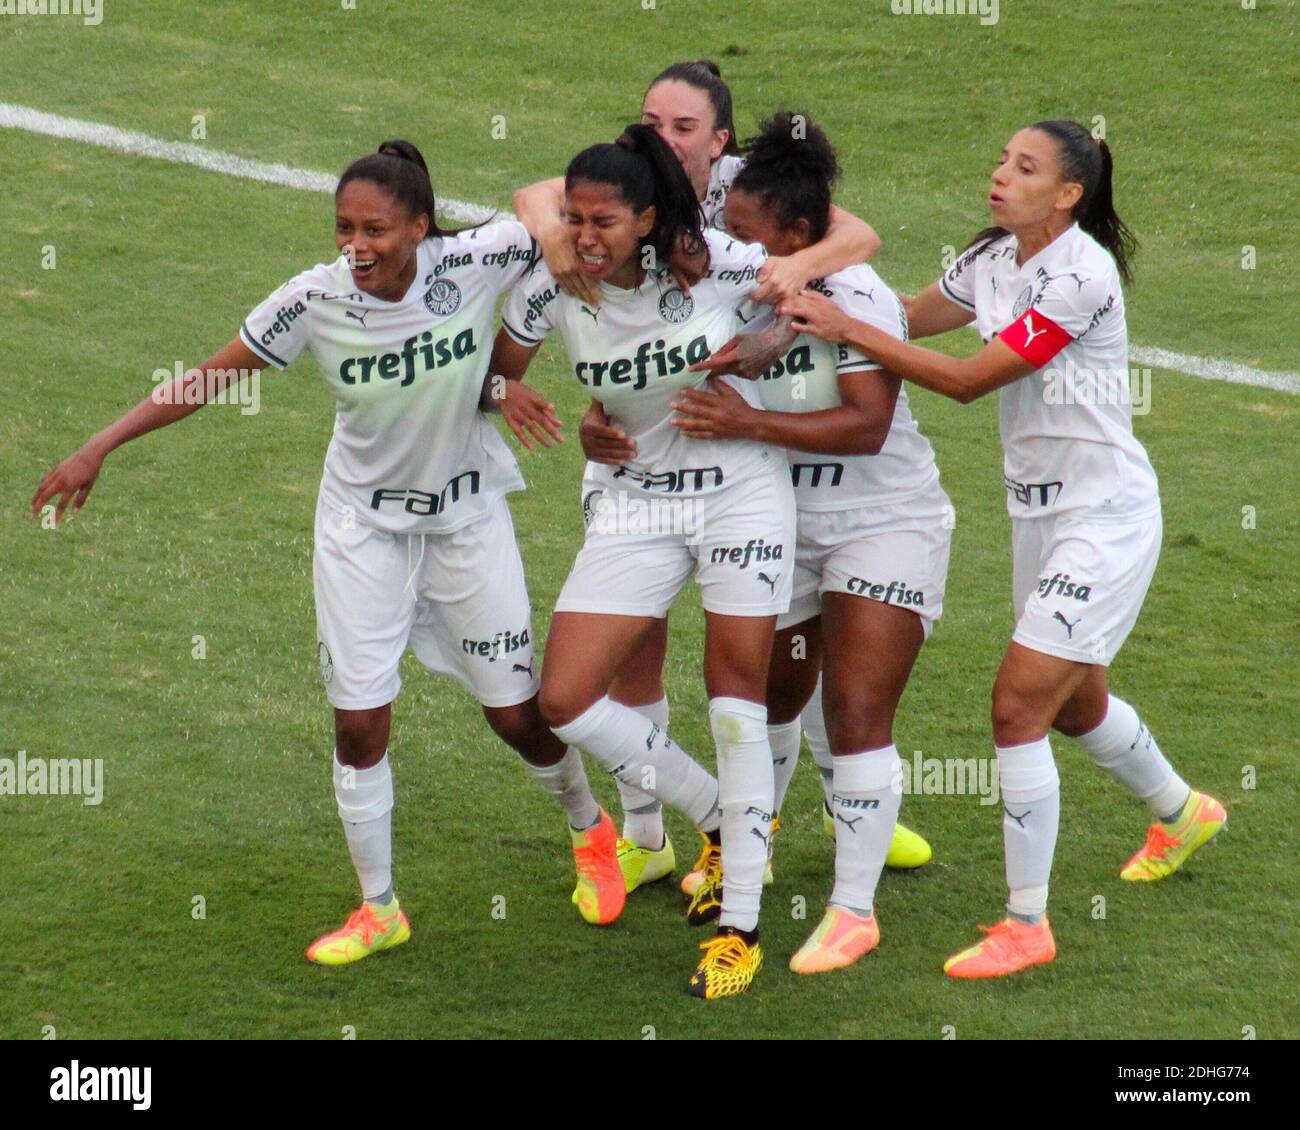 São Paulo 0 x 1 Ferroviária  Campeonato Paulista Feminino